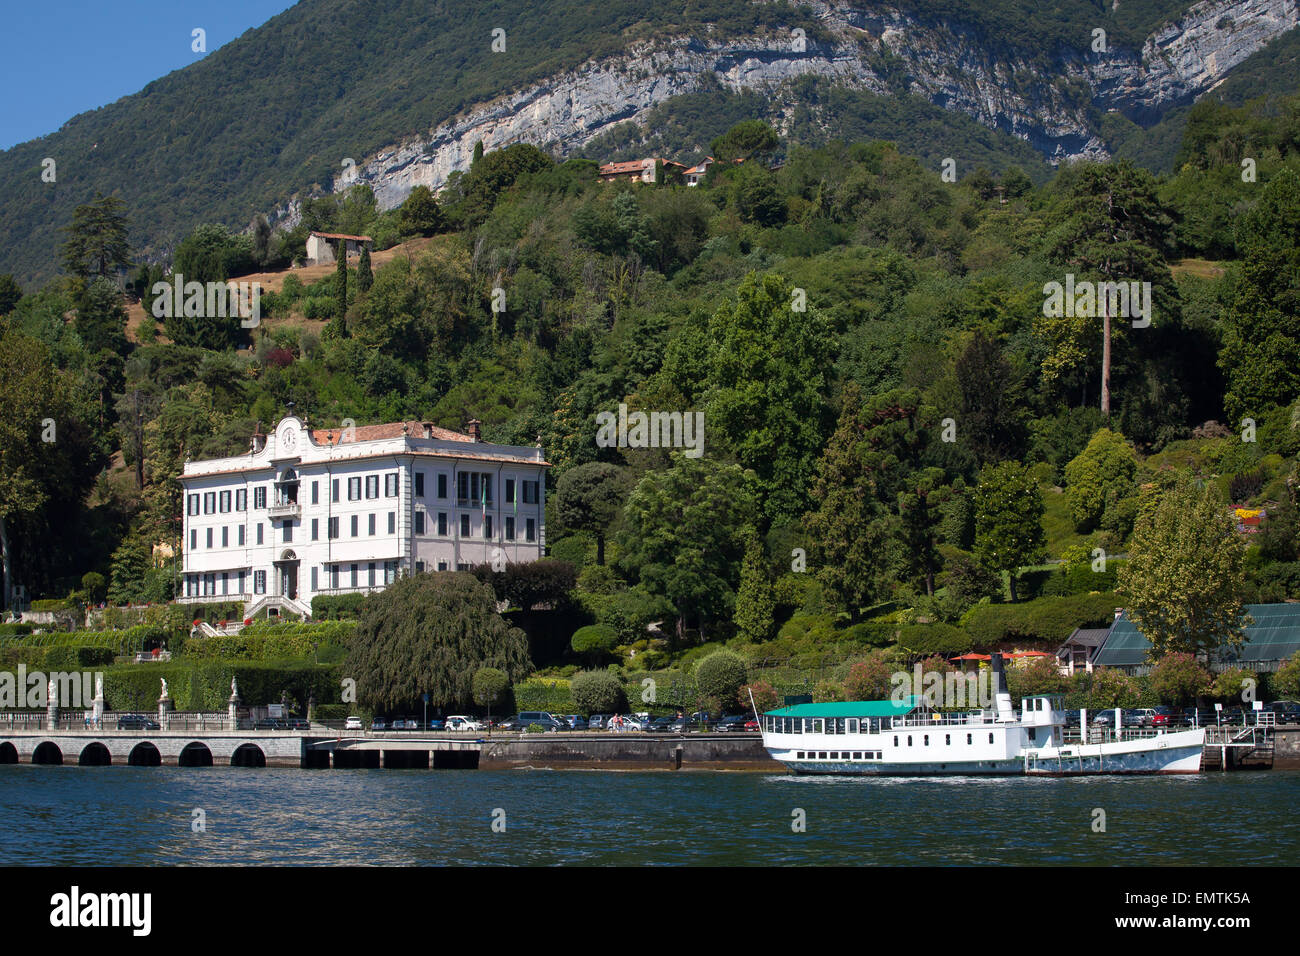 Villa Carlotta in Tremezzo, Lake Como, Italy Stock Photo